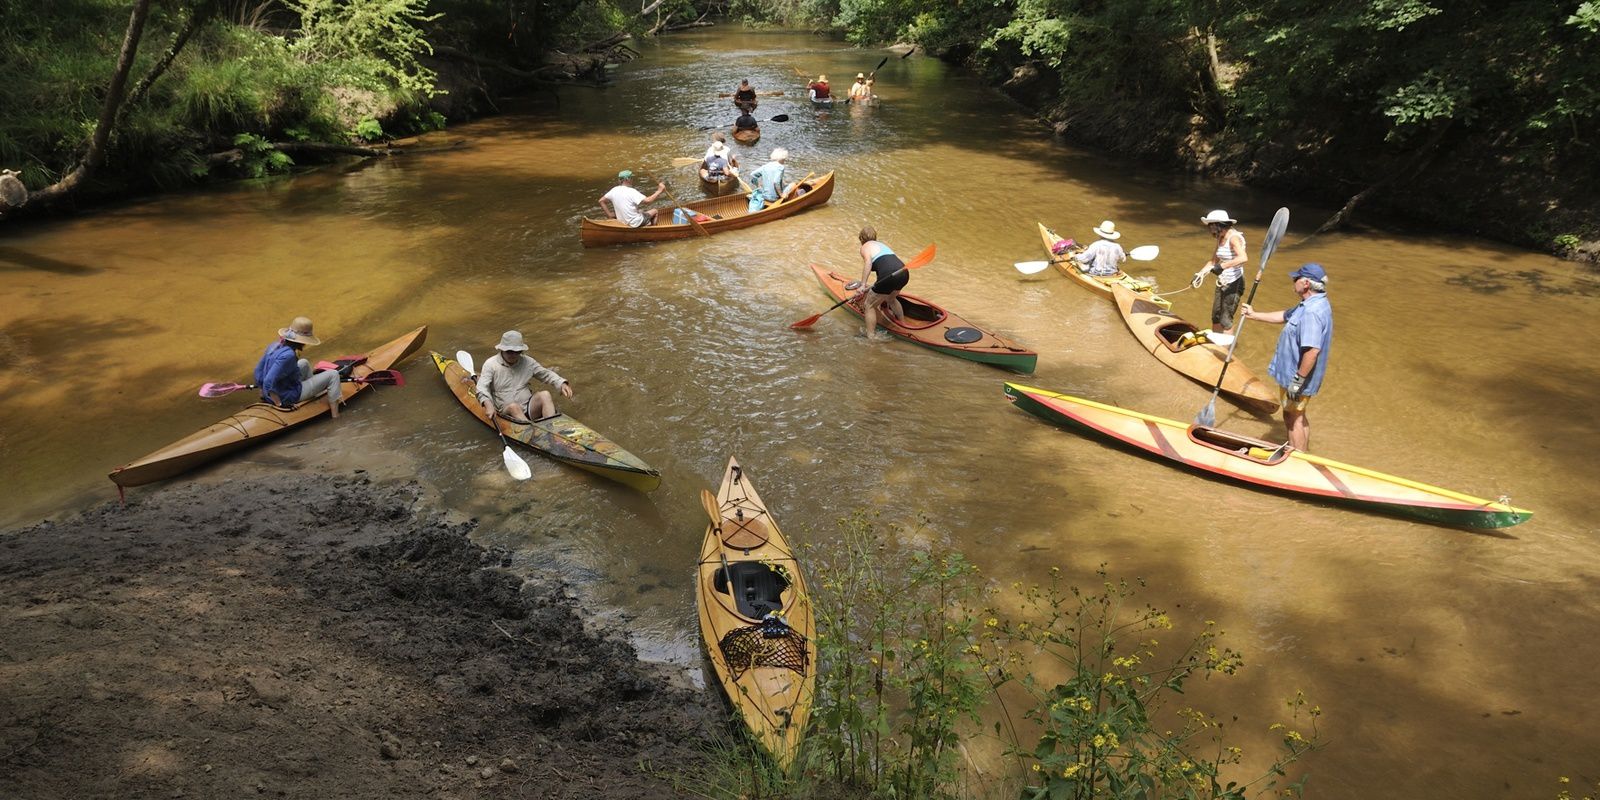 la Leyre, en kayak et canoë bois, du 22 au 29 juillet, de Mexico au Bassin d'Arcachon